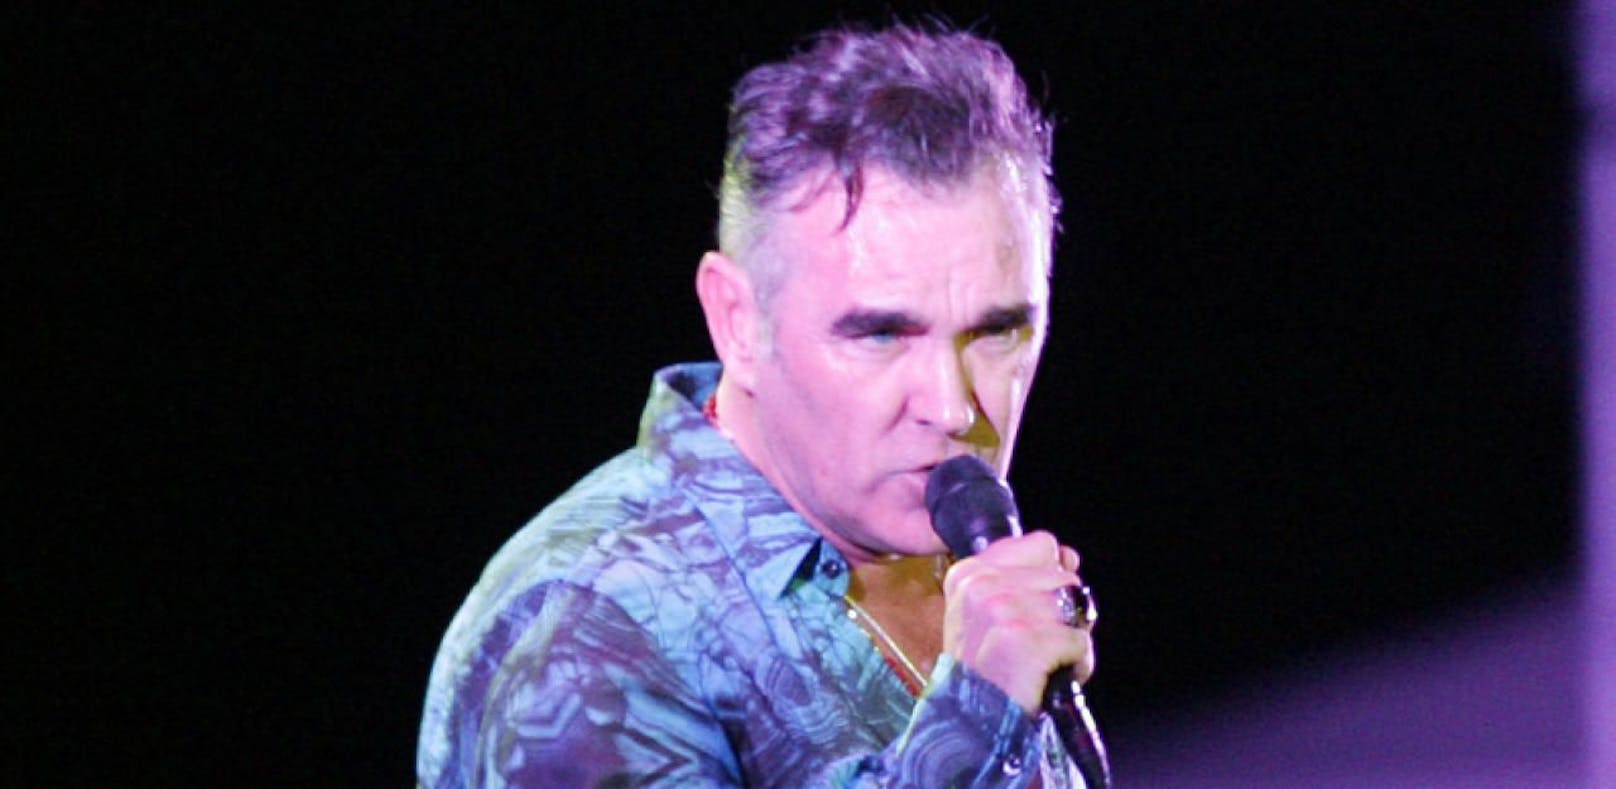 Stimme kaputt! Morrissey sagt Konzert ab